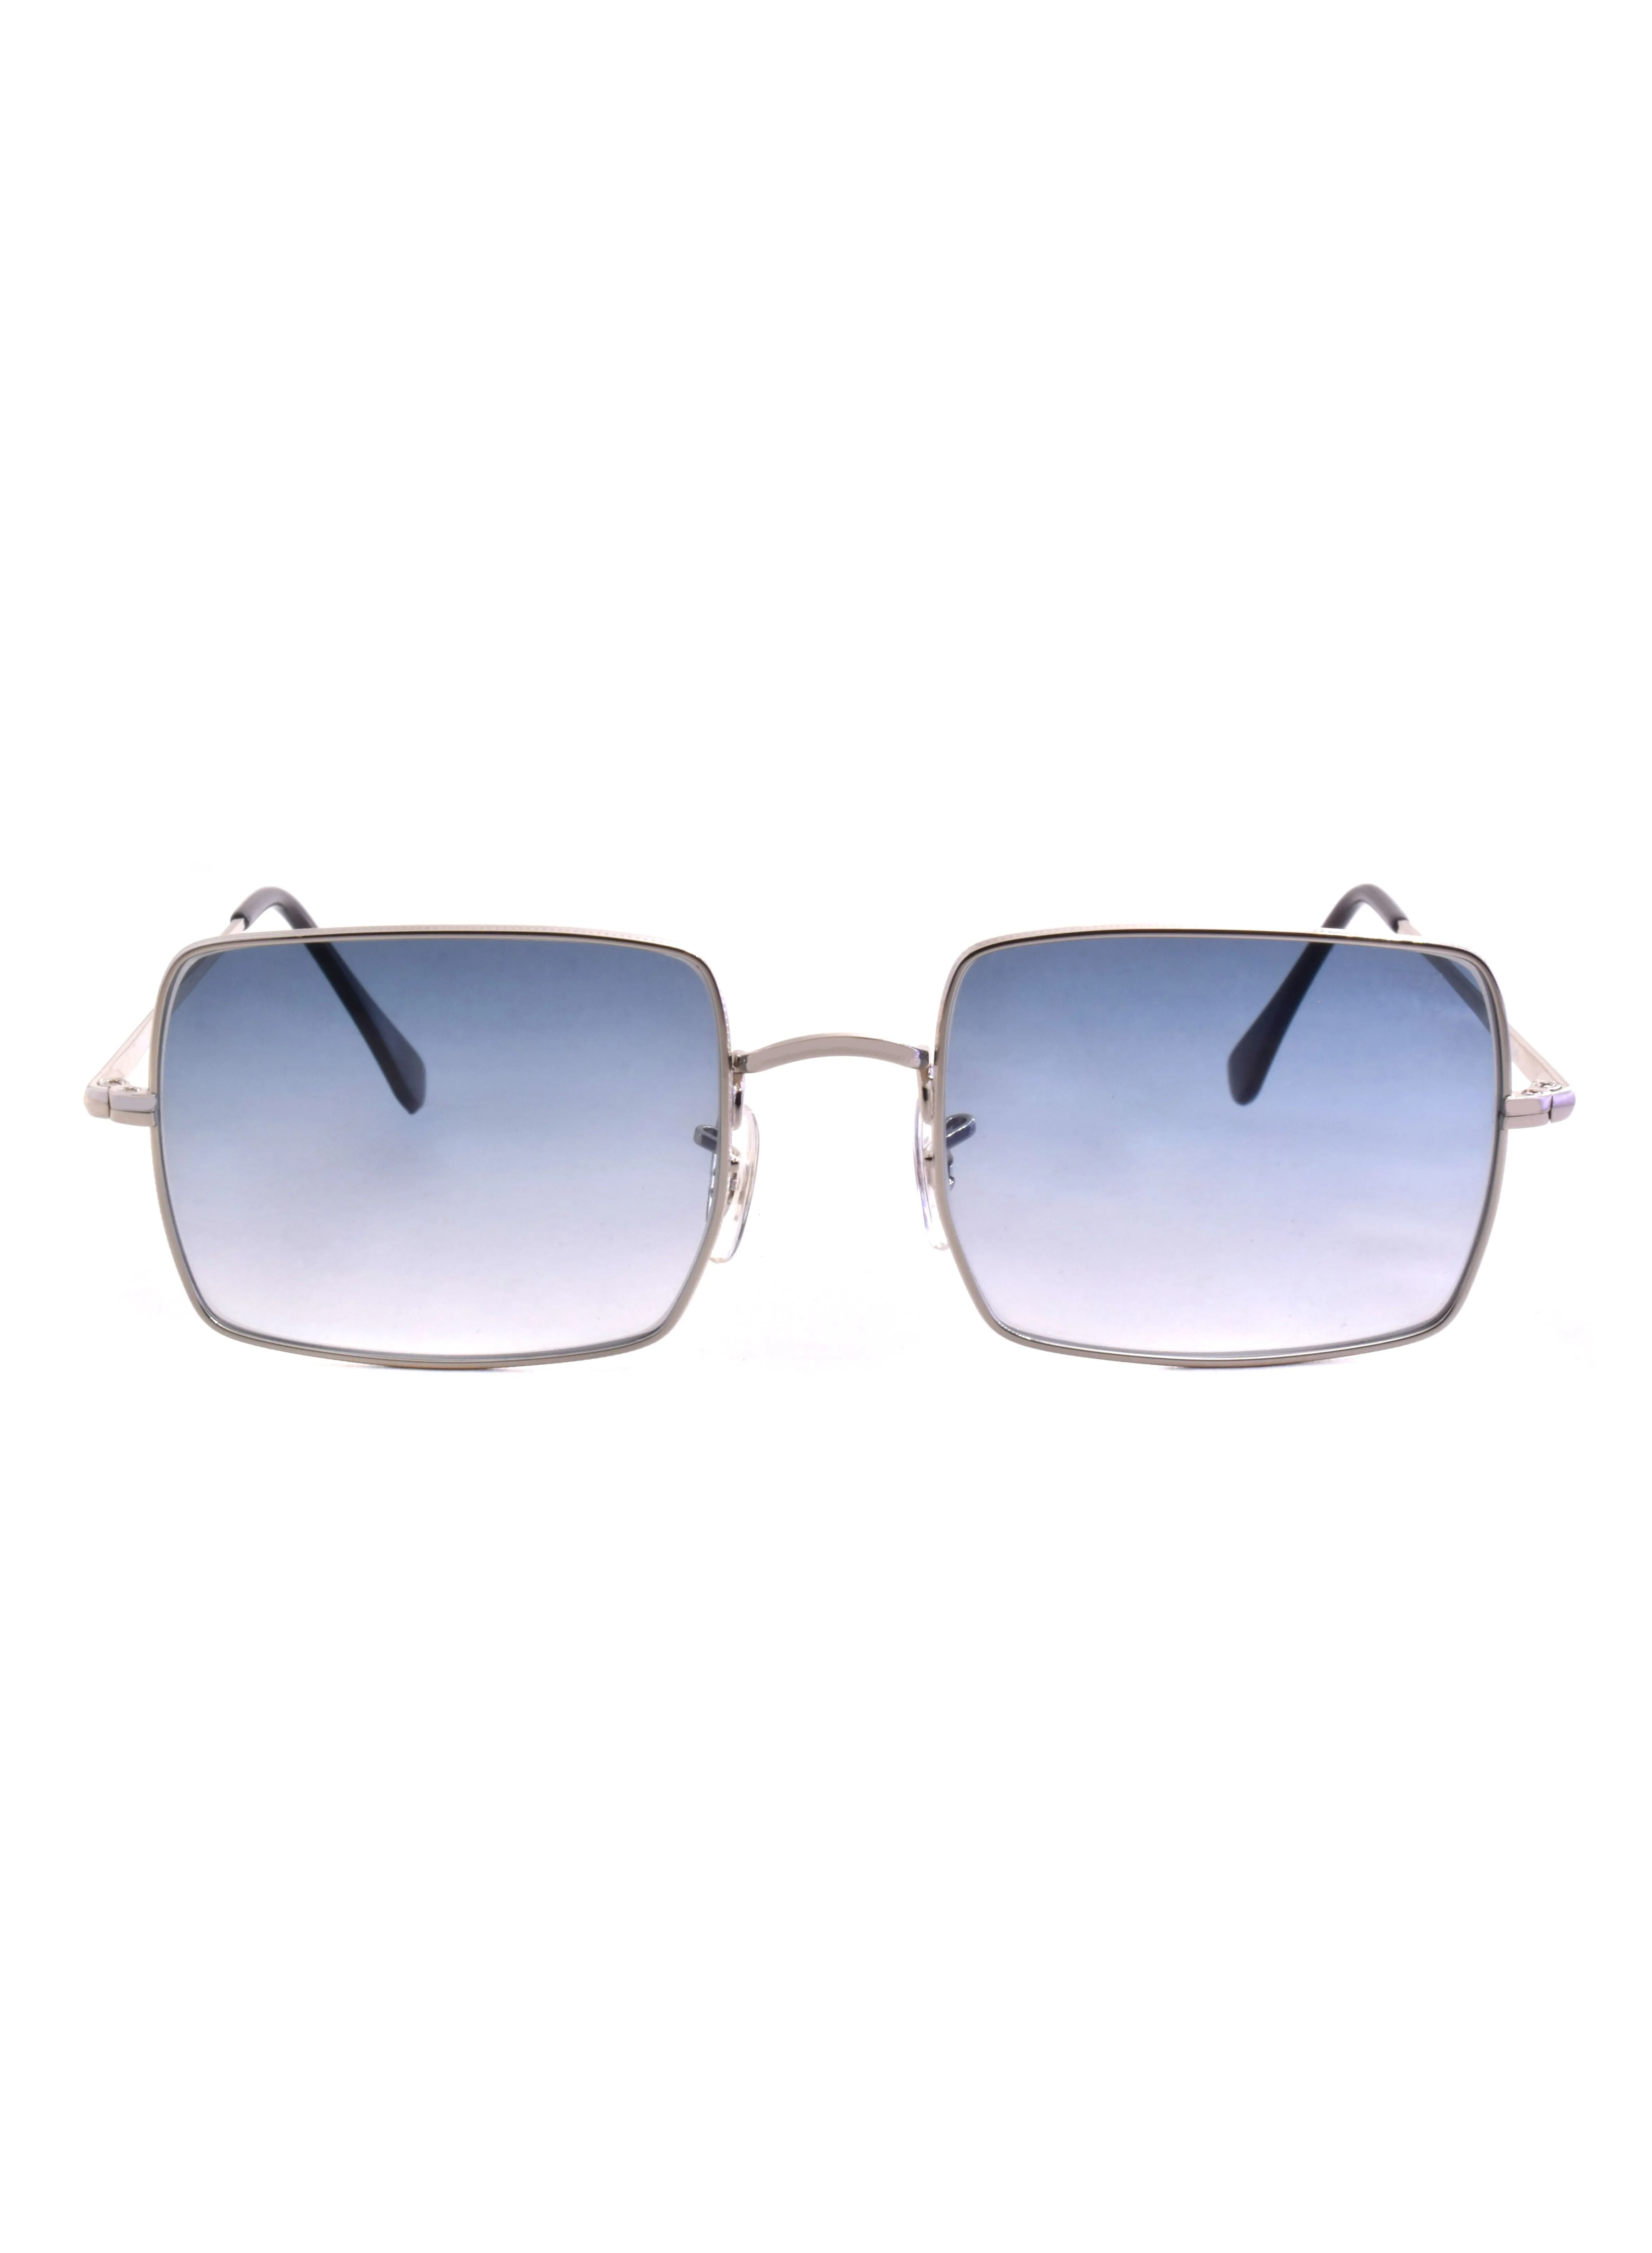 MEC Square Shape Sunglasses G8034-C09